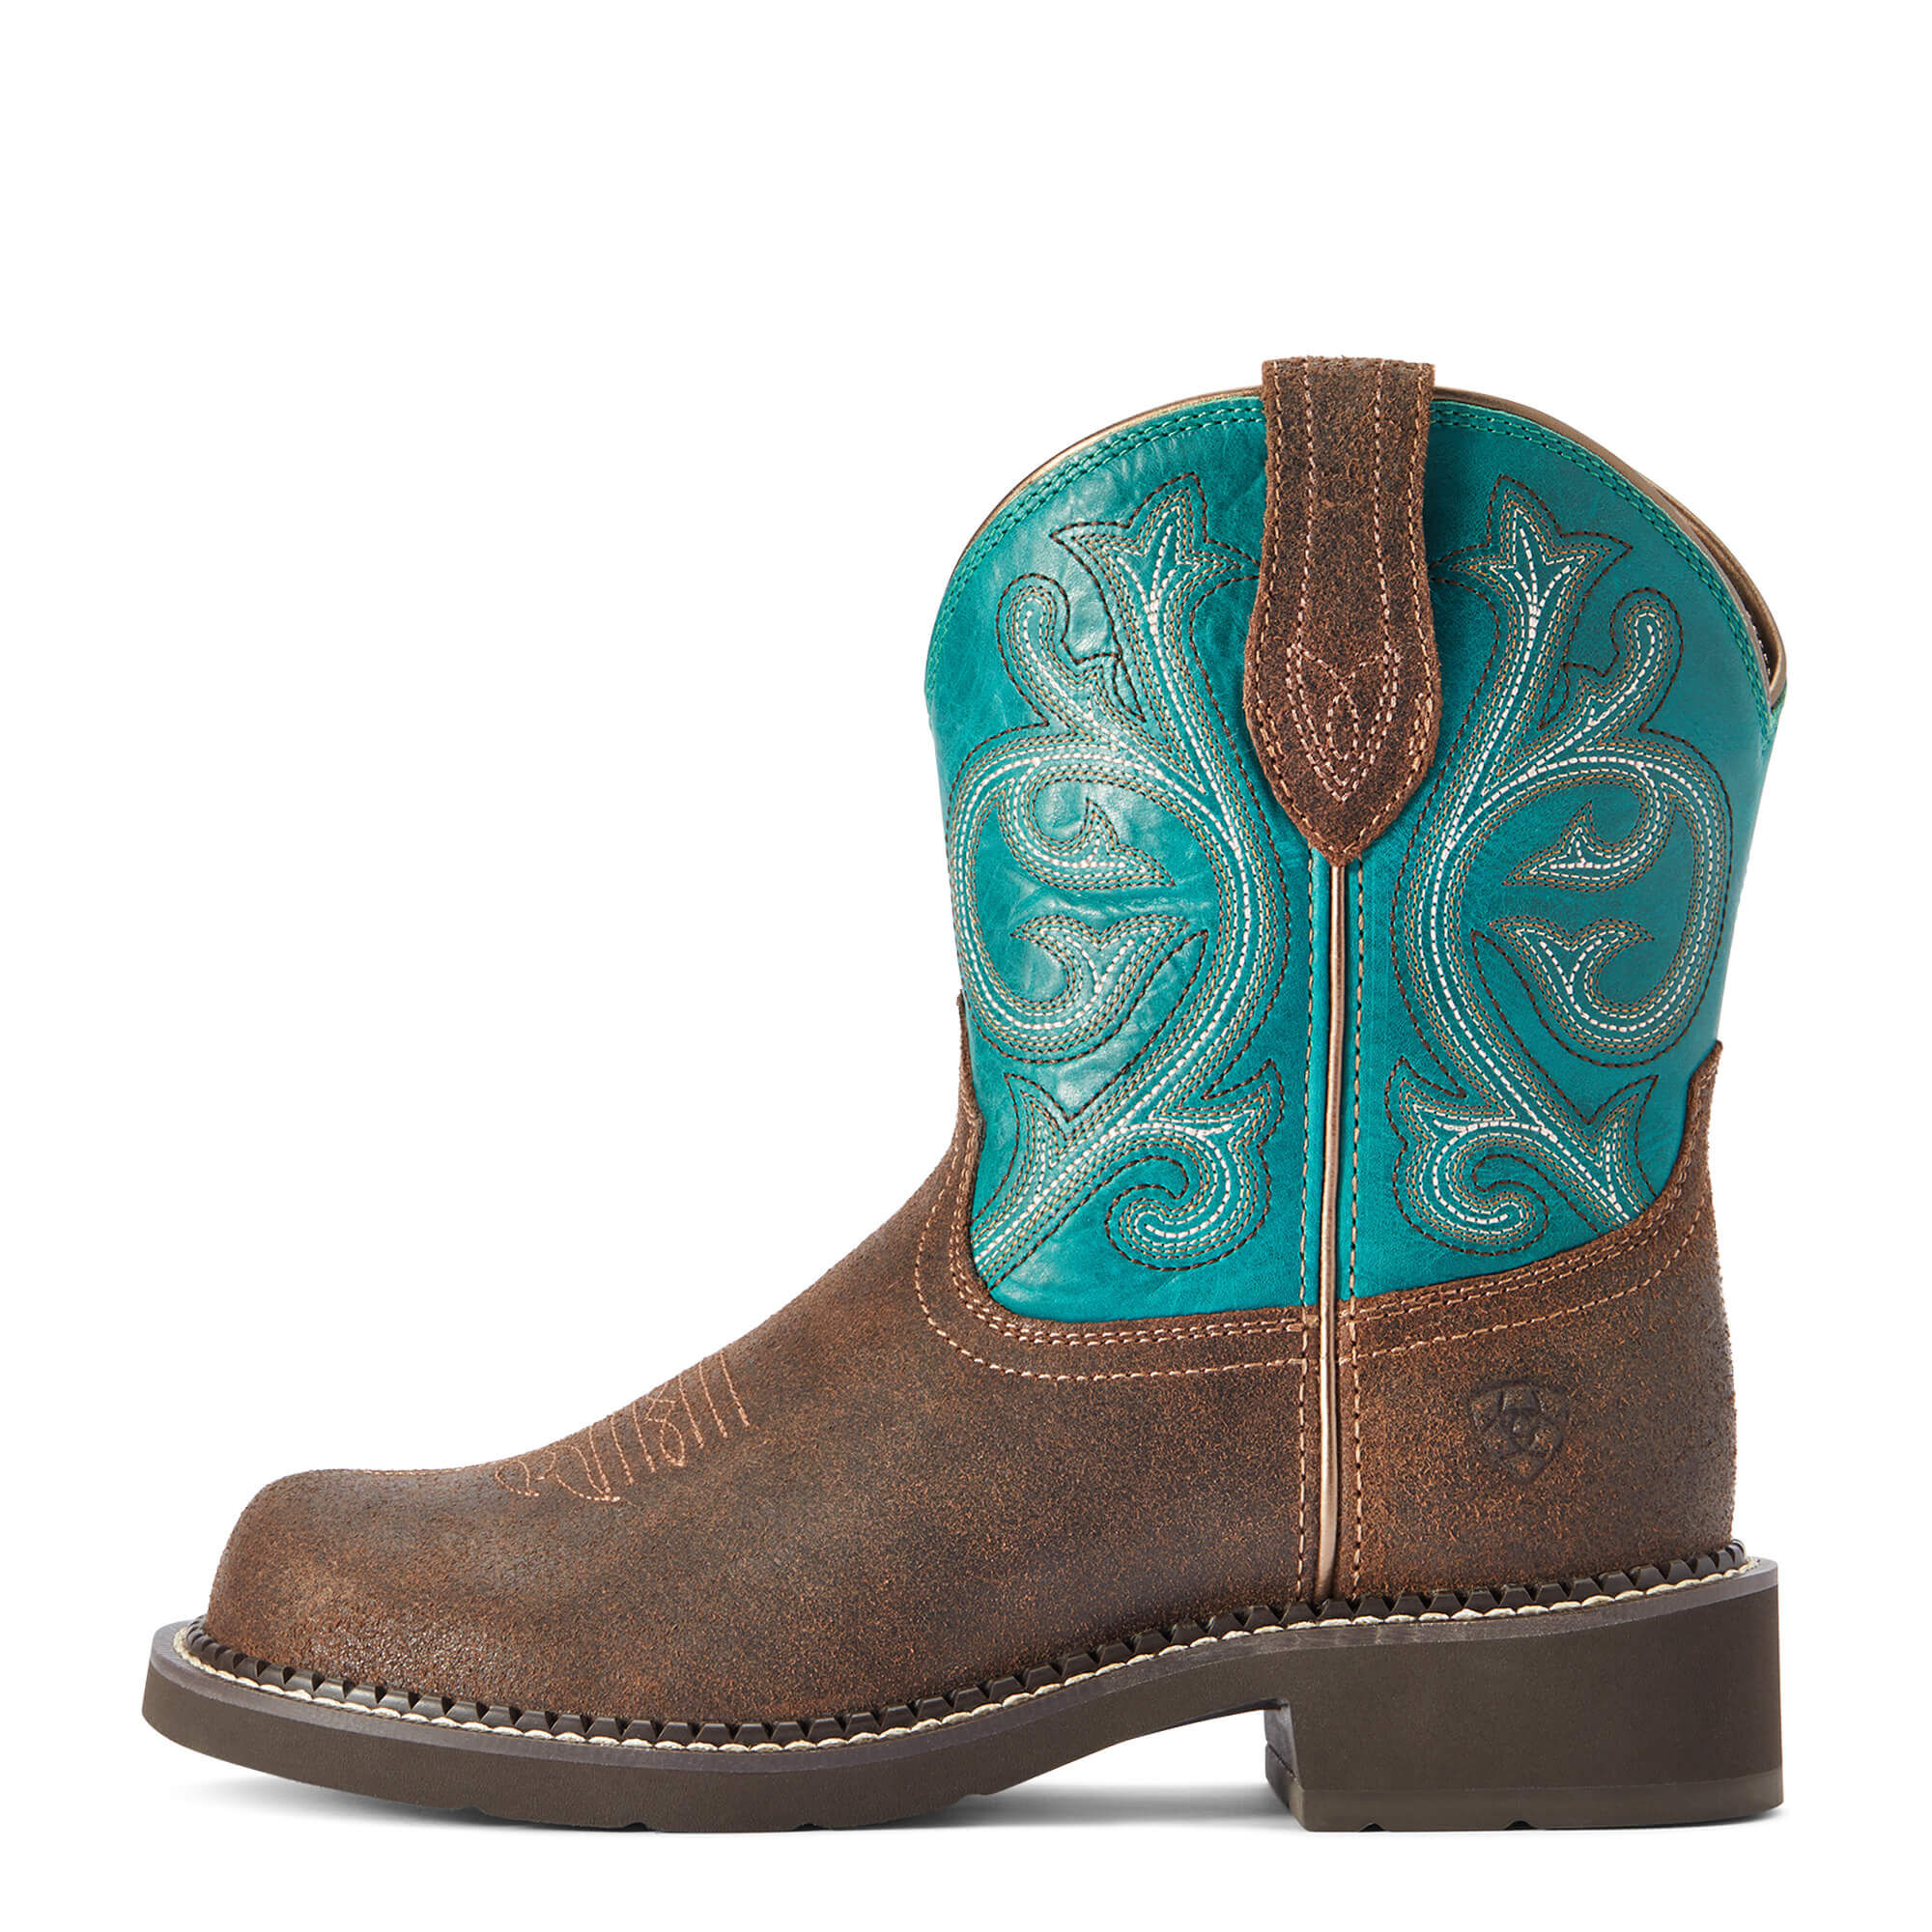 Westernstiefel braun/blau ARIAT Fatbaby Heritage Cowgirl kurze Western-Boots 